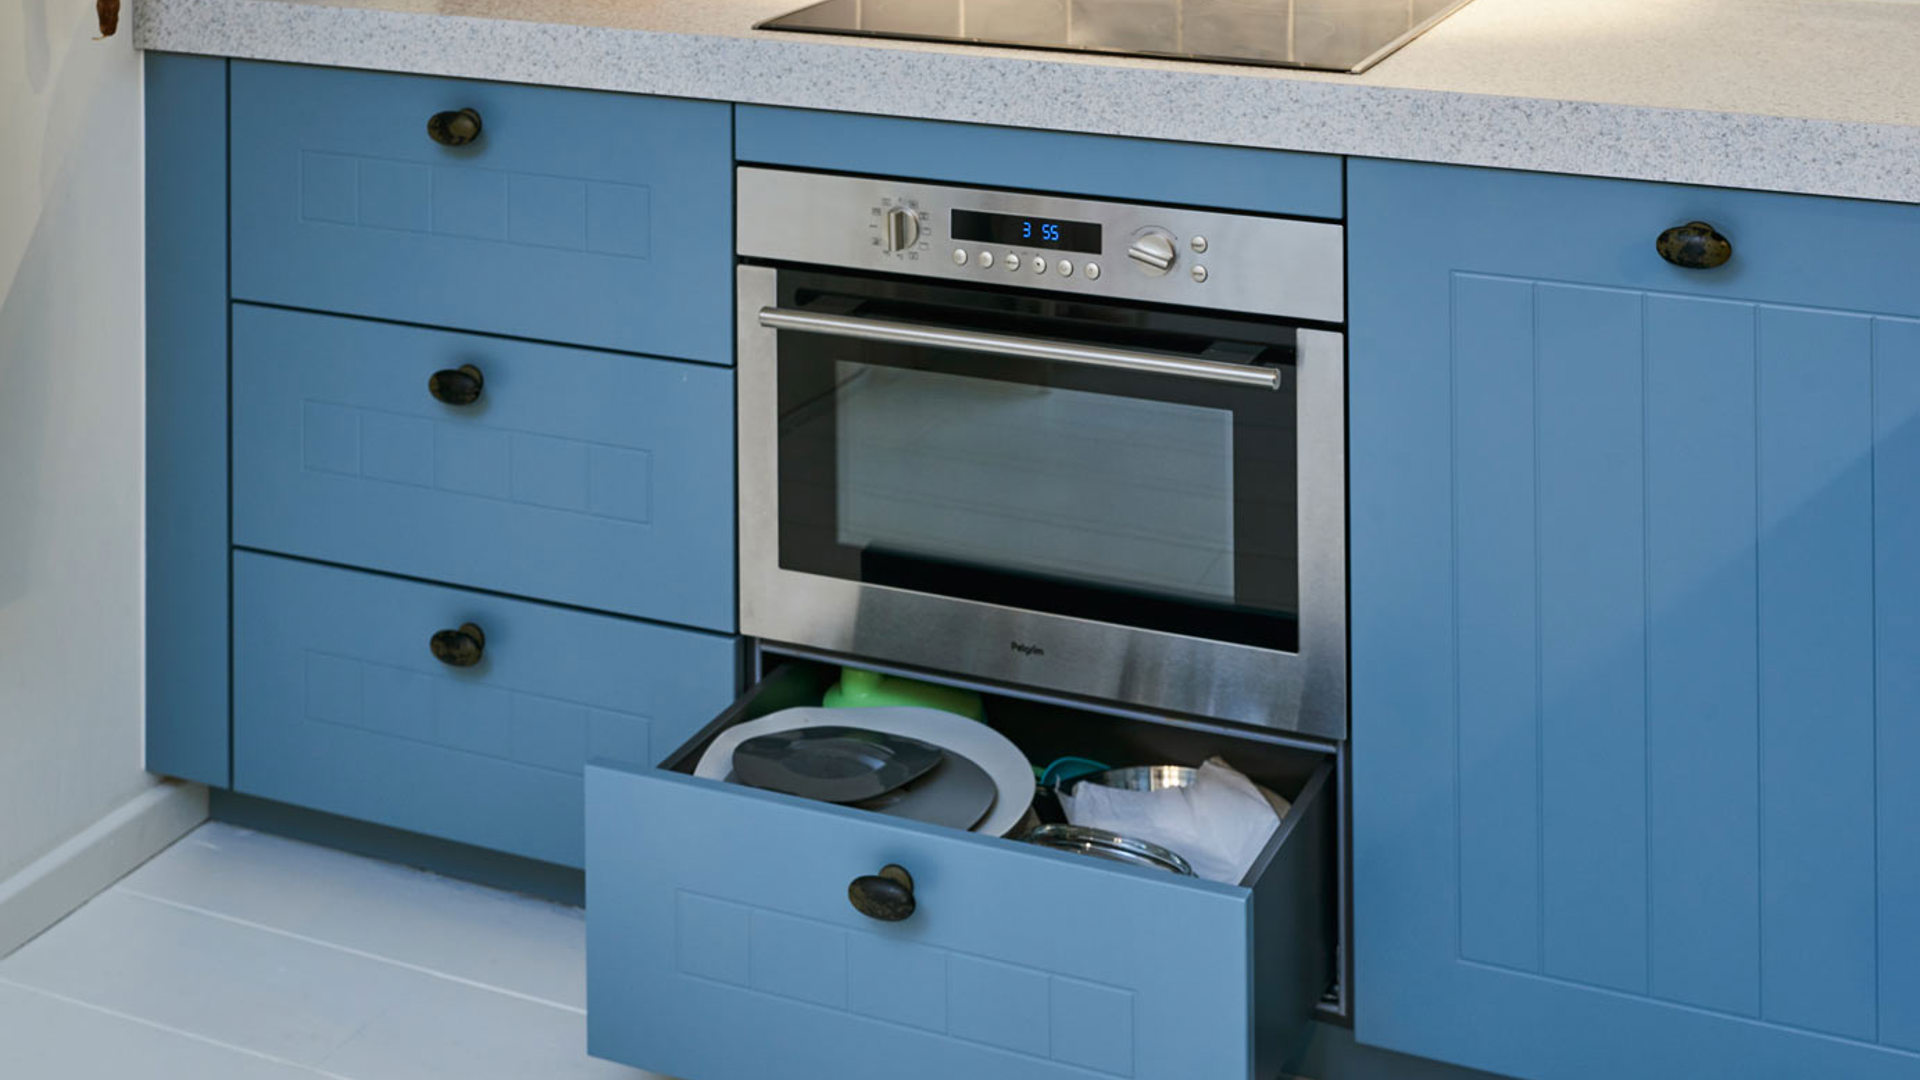 Landelijke blauwe keuken Krabbendijke, oven